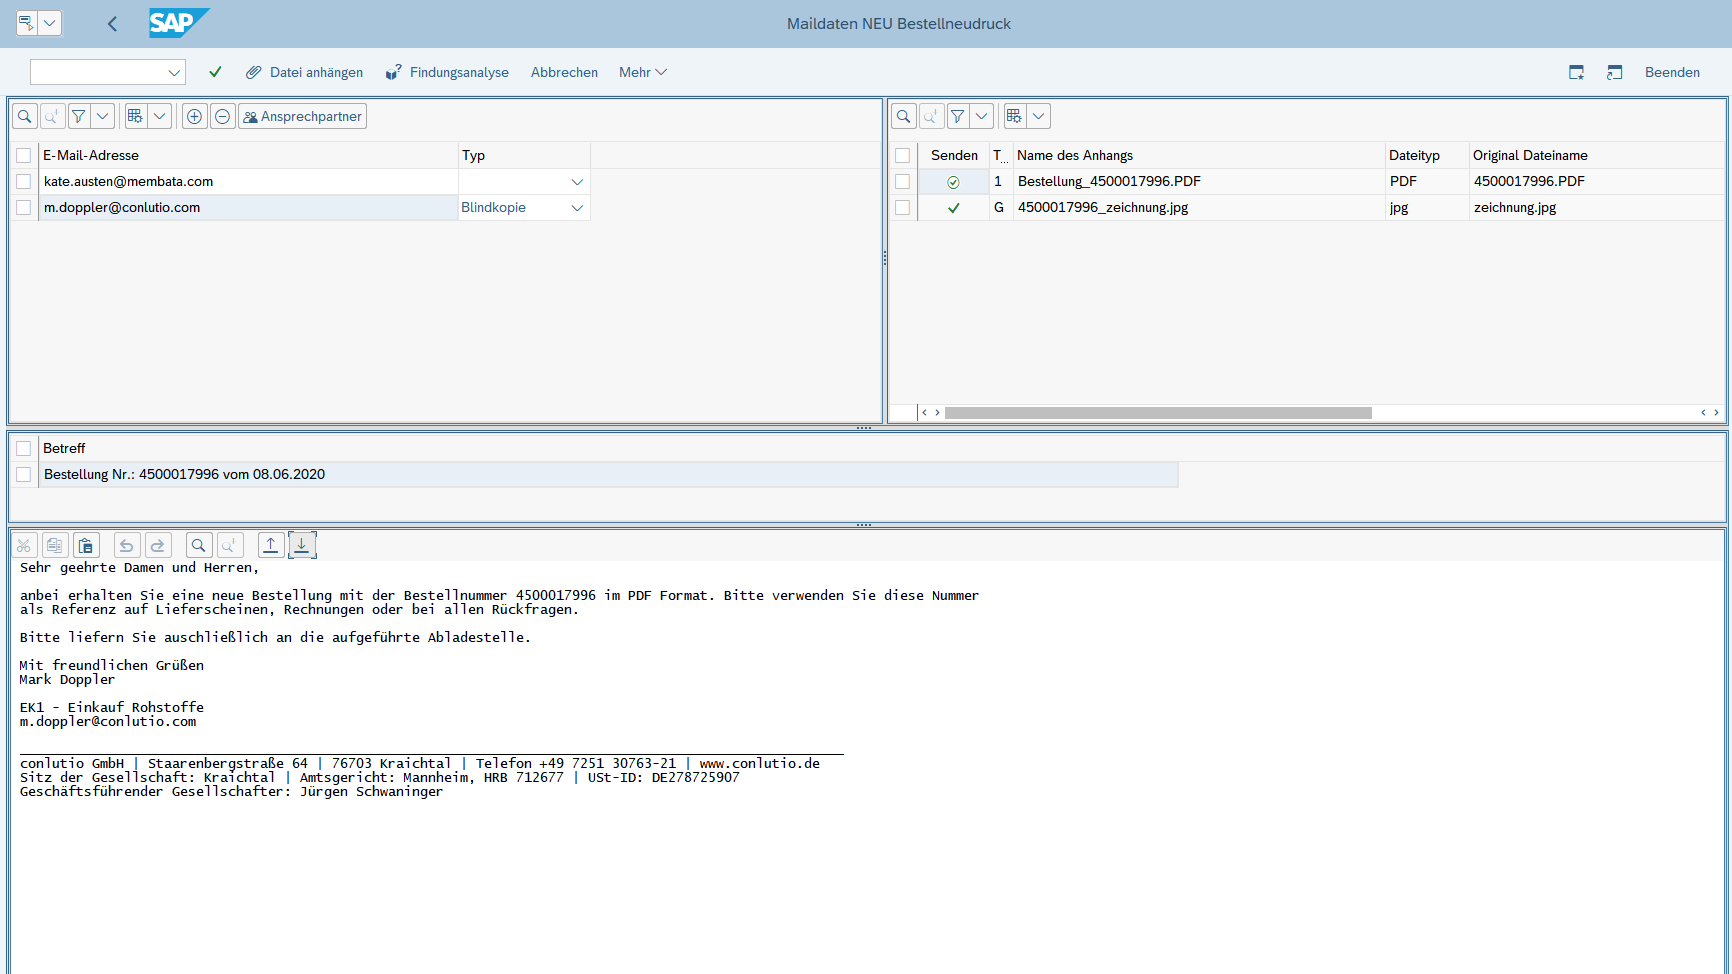 Automatische Findung und Überarbeitungsmöglichkeiten aller Maildaten direkt aus dem SAP Beleg